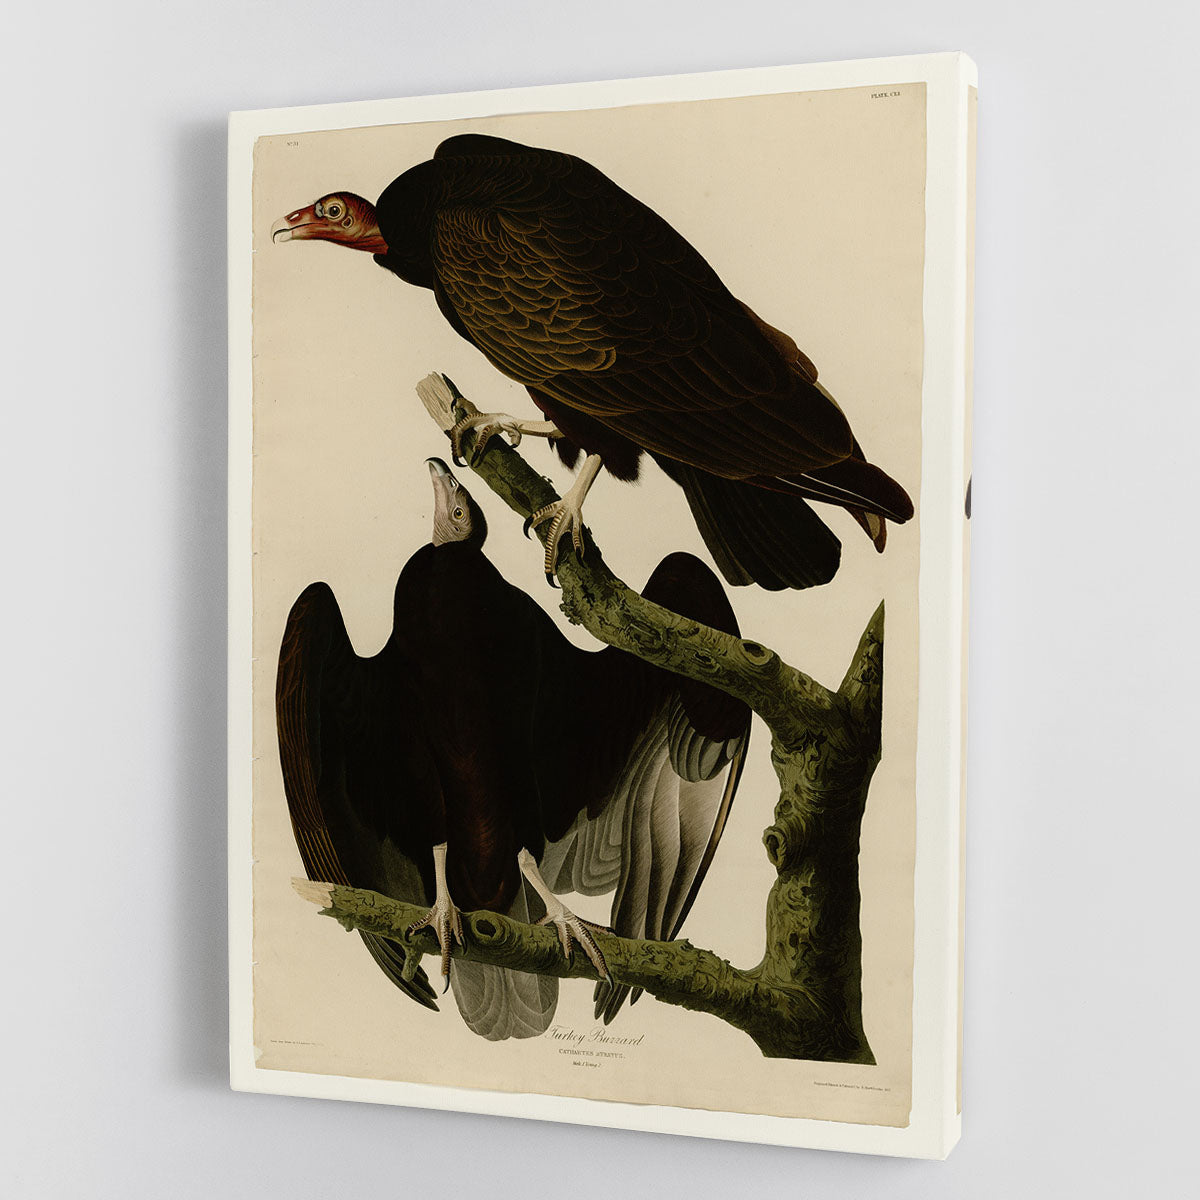 Turkey Buzzard by Audubon Canvas Print or Poster - Canvas Art Rocks - 1